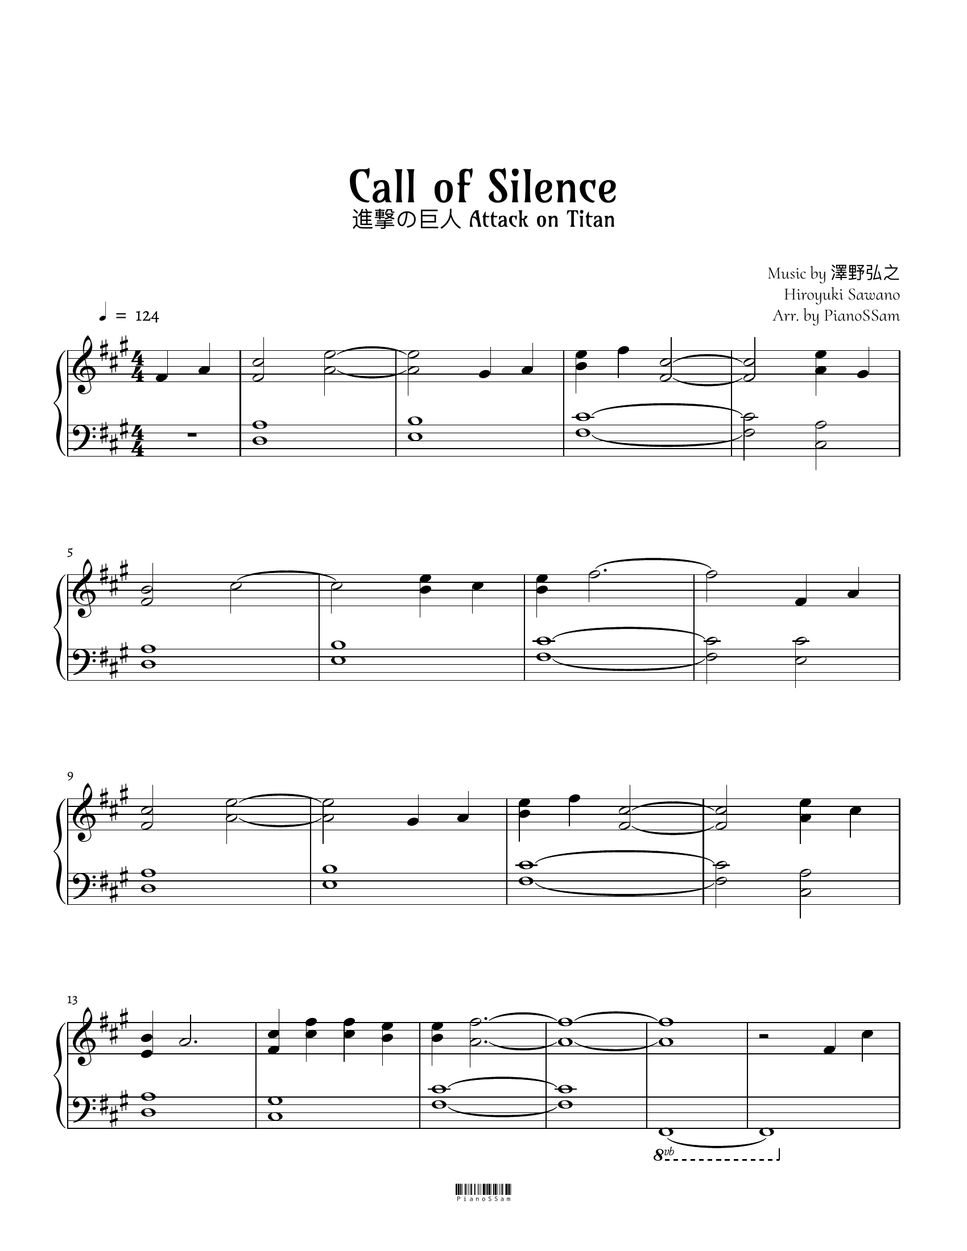 사와노 히로유키 - Call of Silence (진격의 거인) by PianoSSam